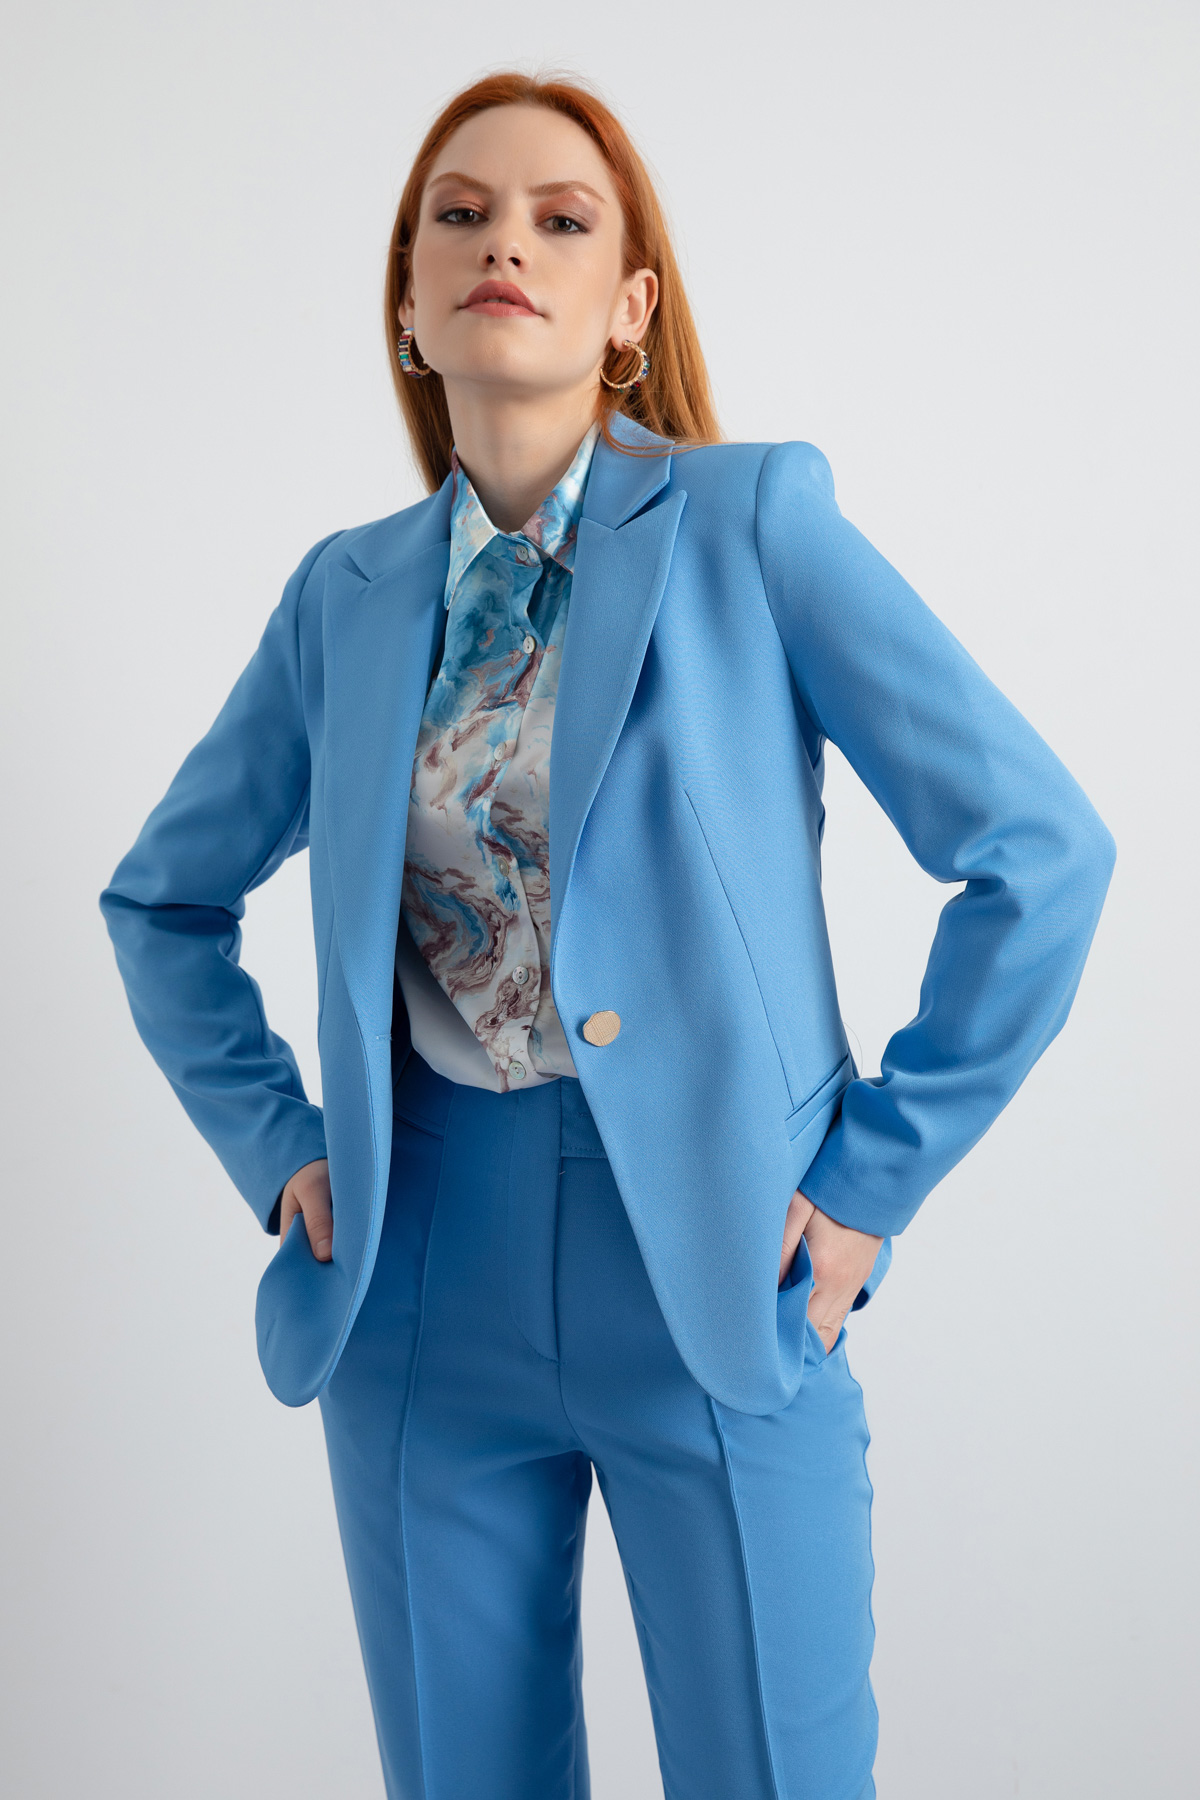 Women's Blue Single Button Jacket